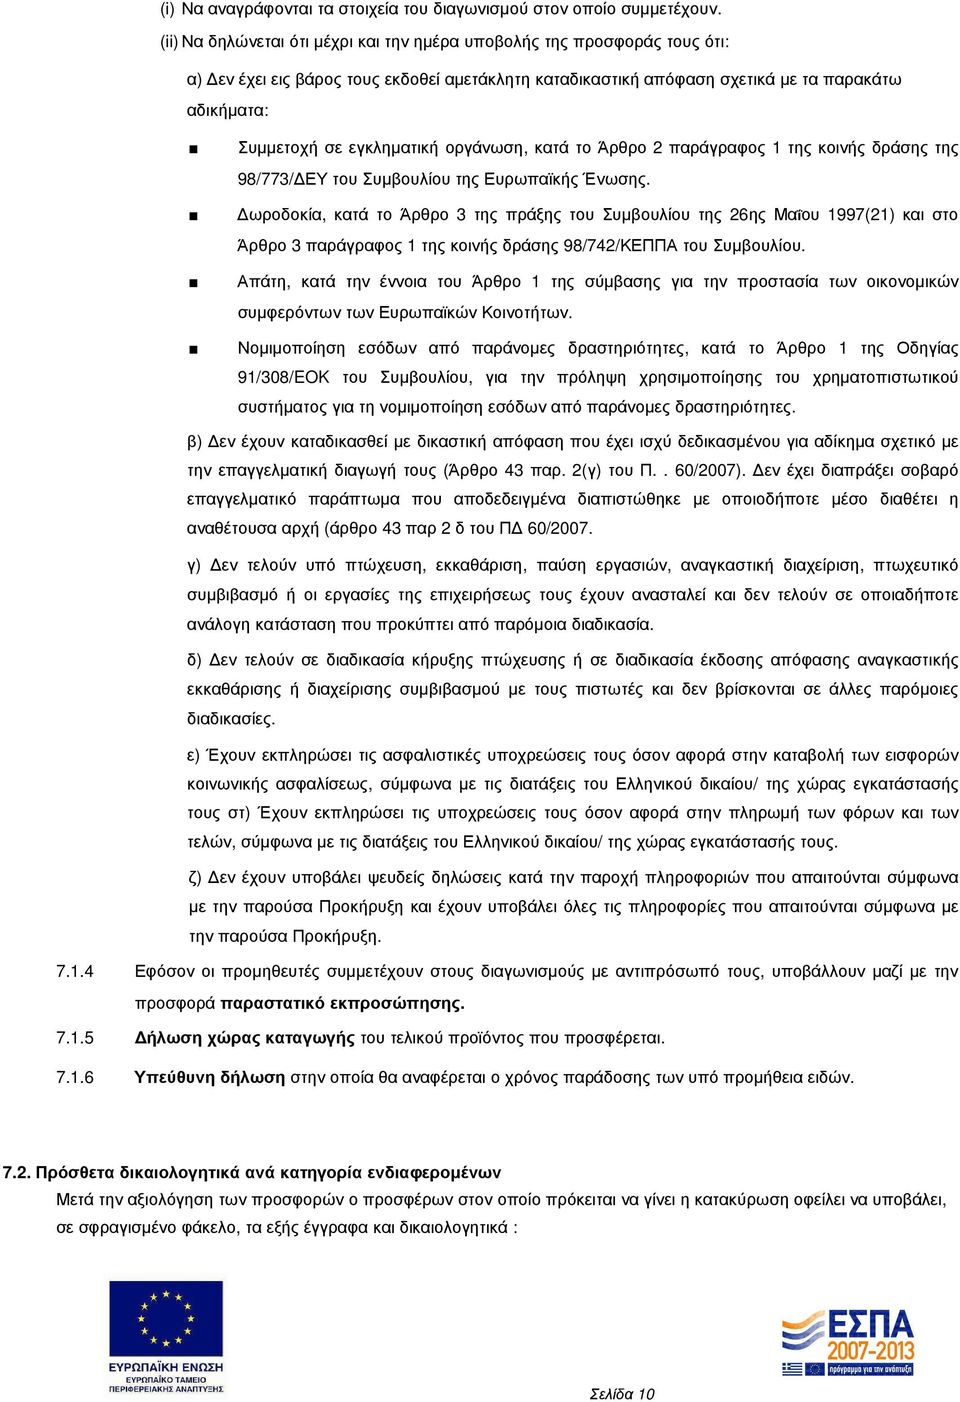 εγκληµατική οργάνωση, κατά το Άρθρο 2 παράγραφος 1 της κοινής δράσης της 98/773/ ΕΥ του Συµβουλίου της Ευρωπαϊκής Ένωσης.